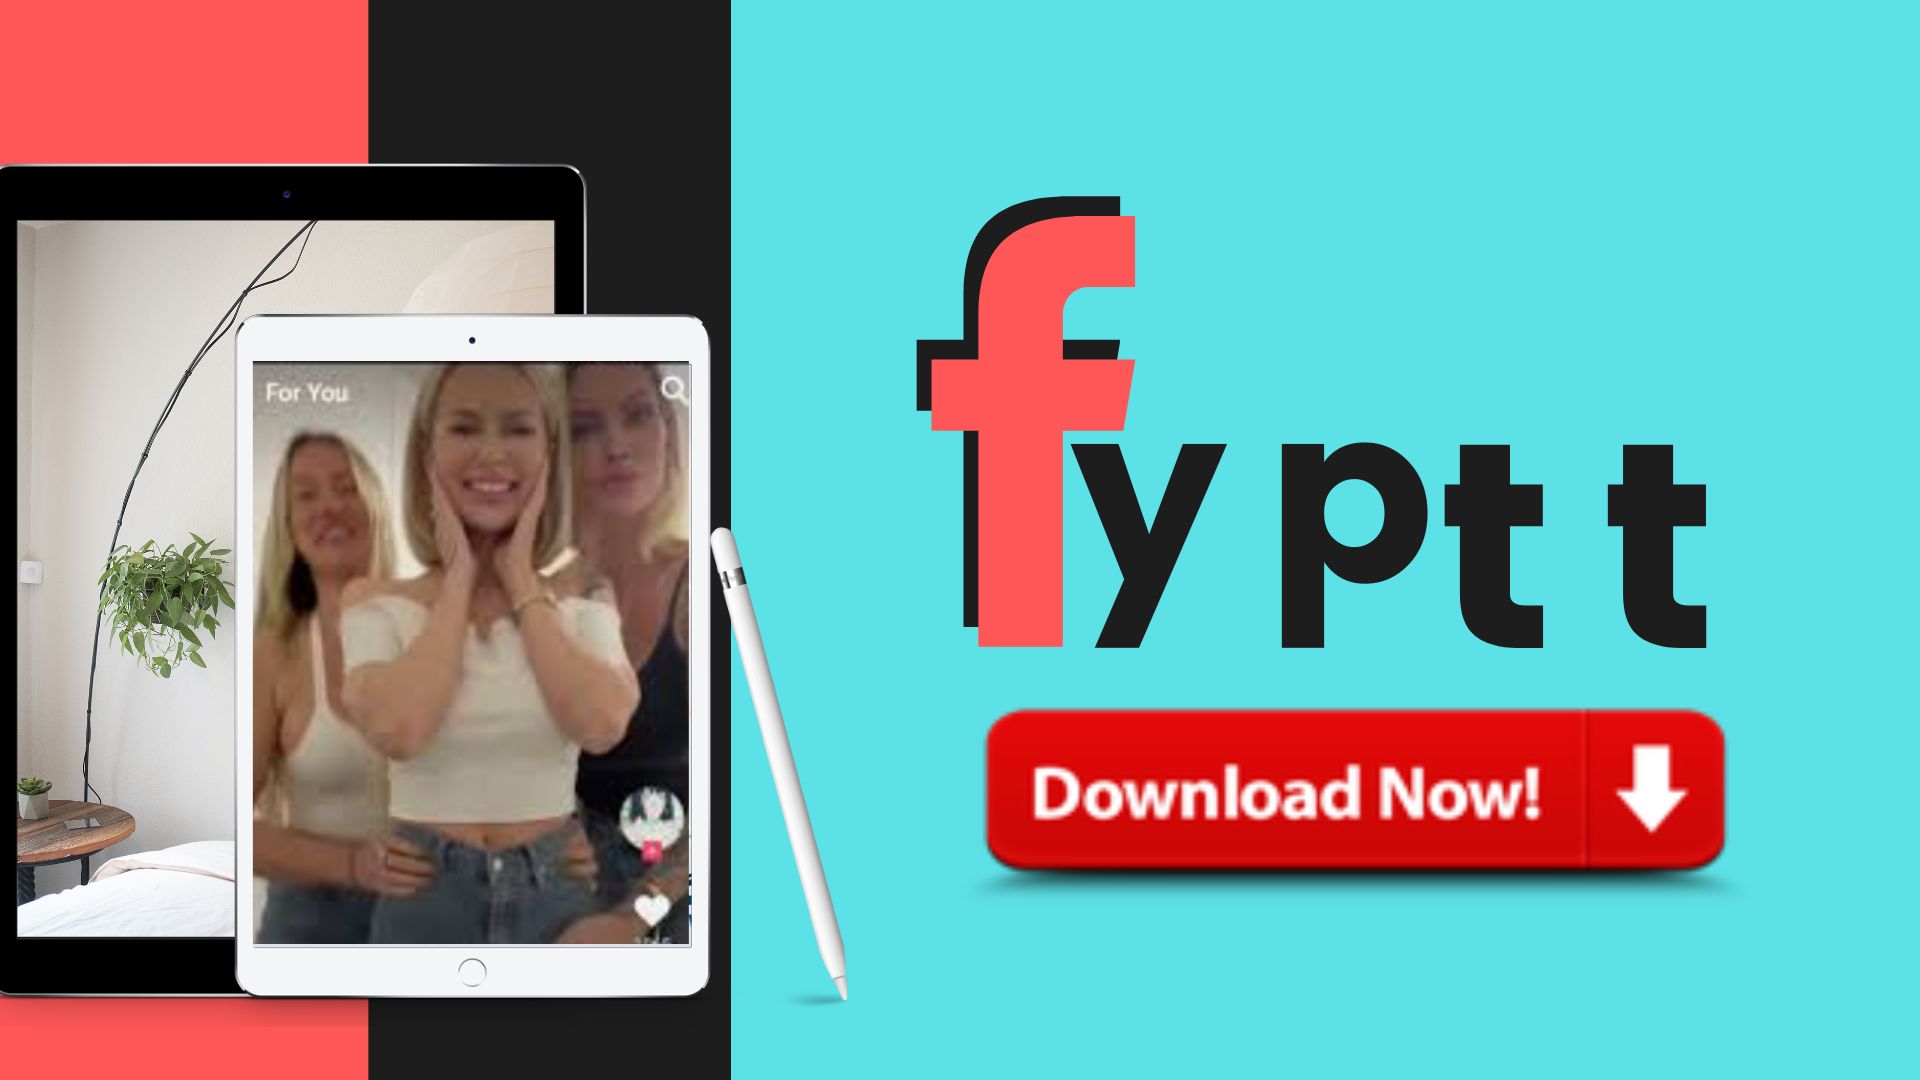 Wat zijn de kenmerken van de FYPTT-app?